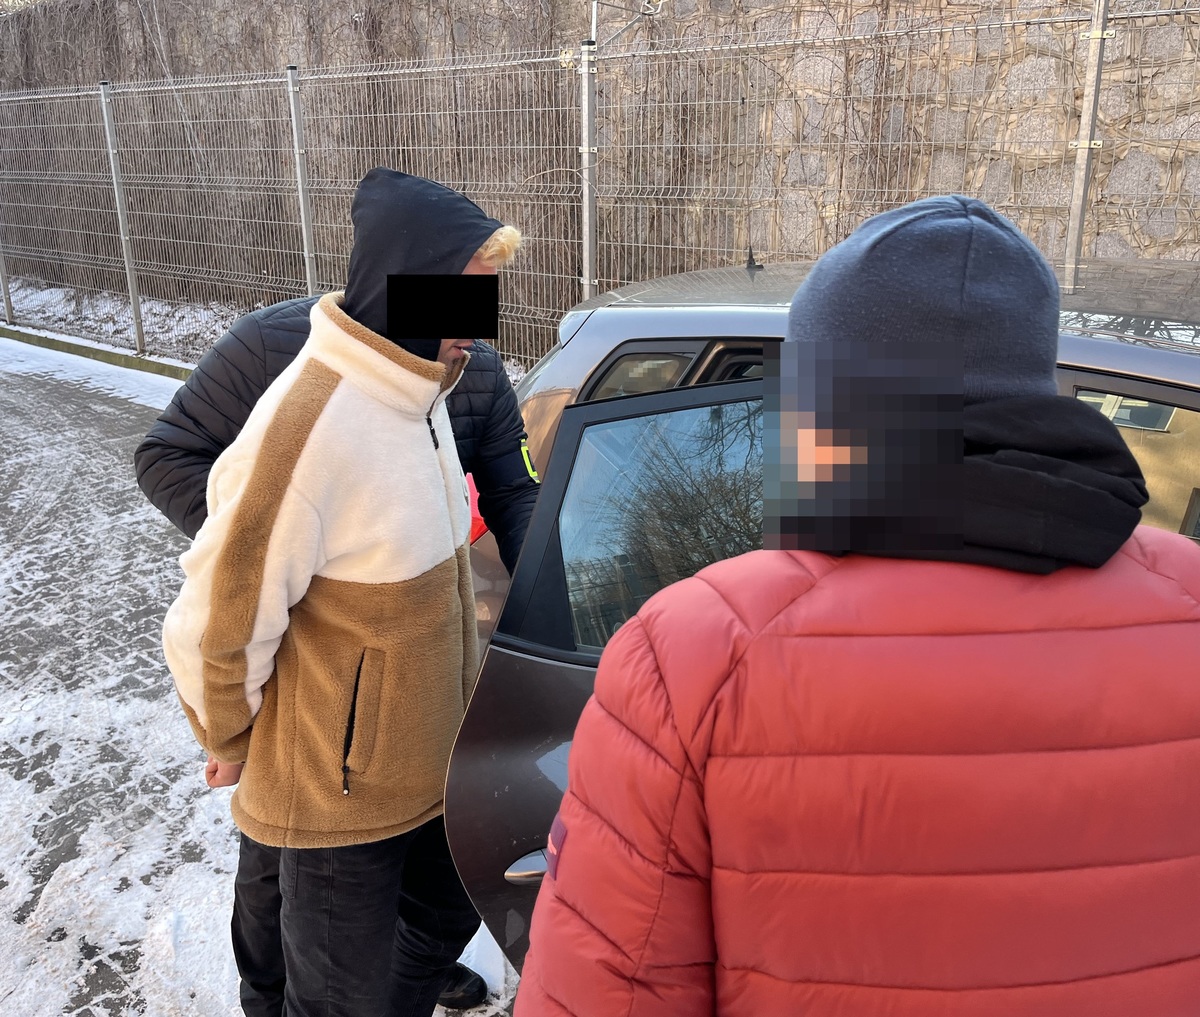 Zatrzymany Za Kradzież Ciągników Ursus - Sąd Zastosował Areszt Tymczasowy.